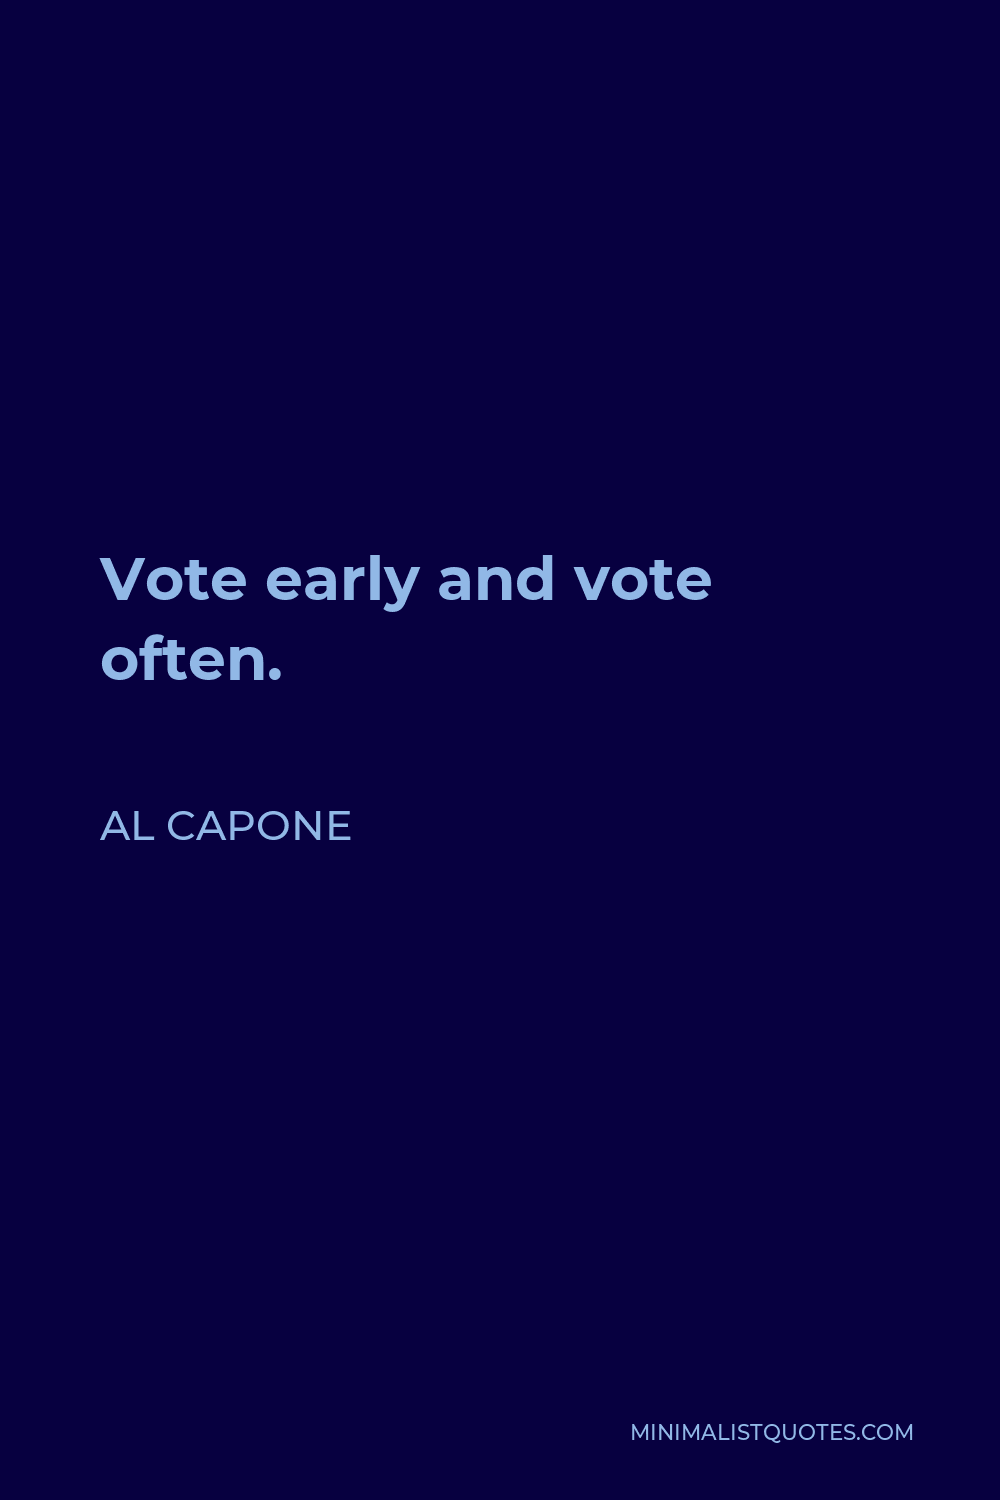 Al Capone Quote - Vote early and vote often.